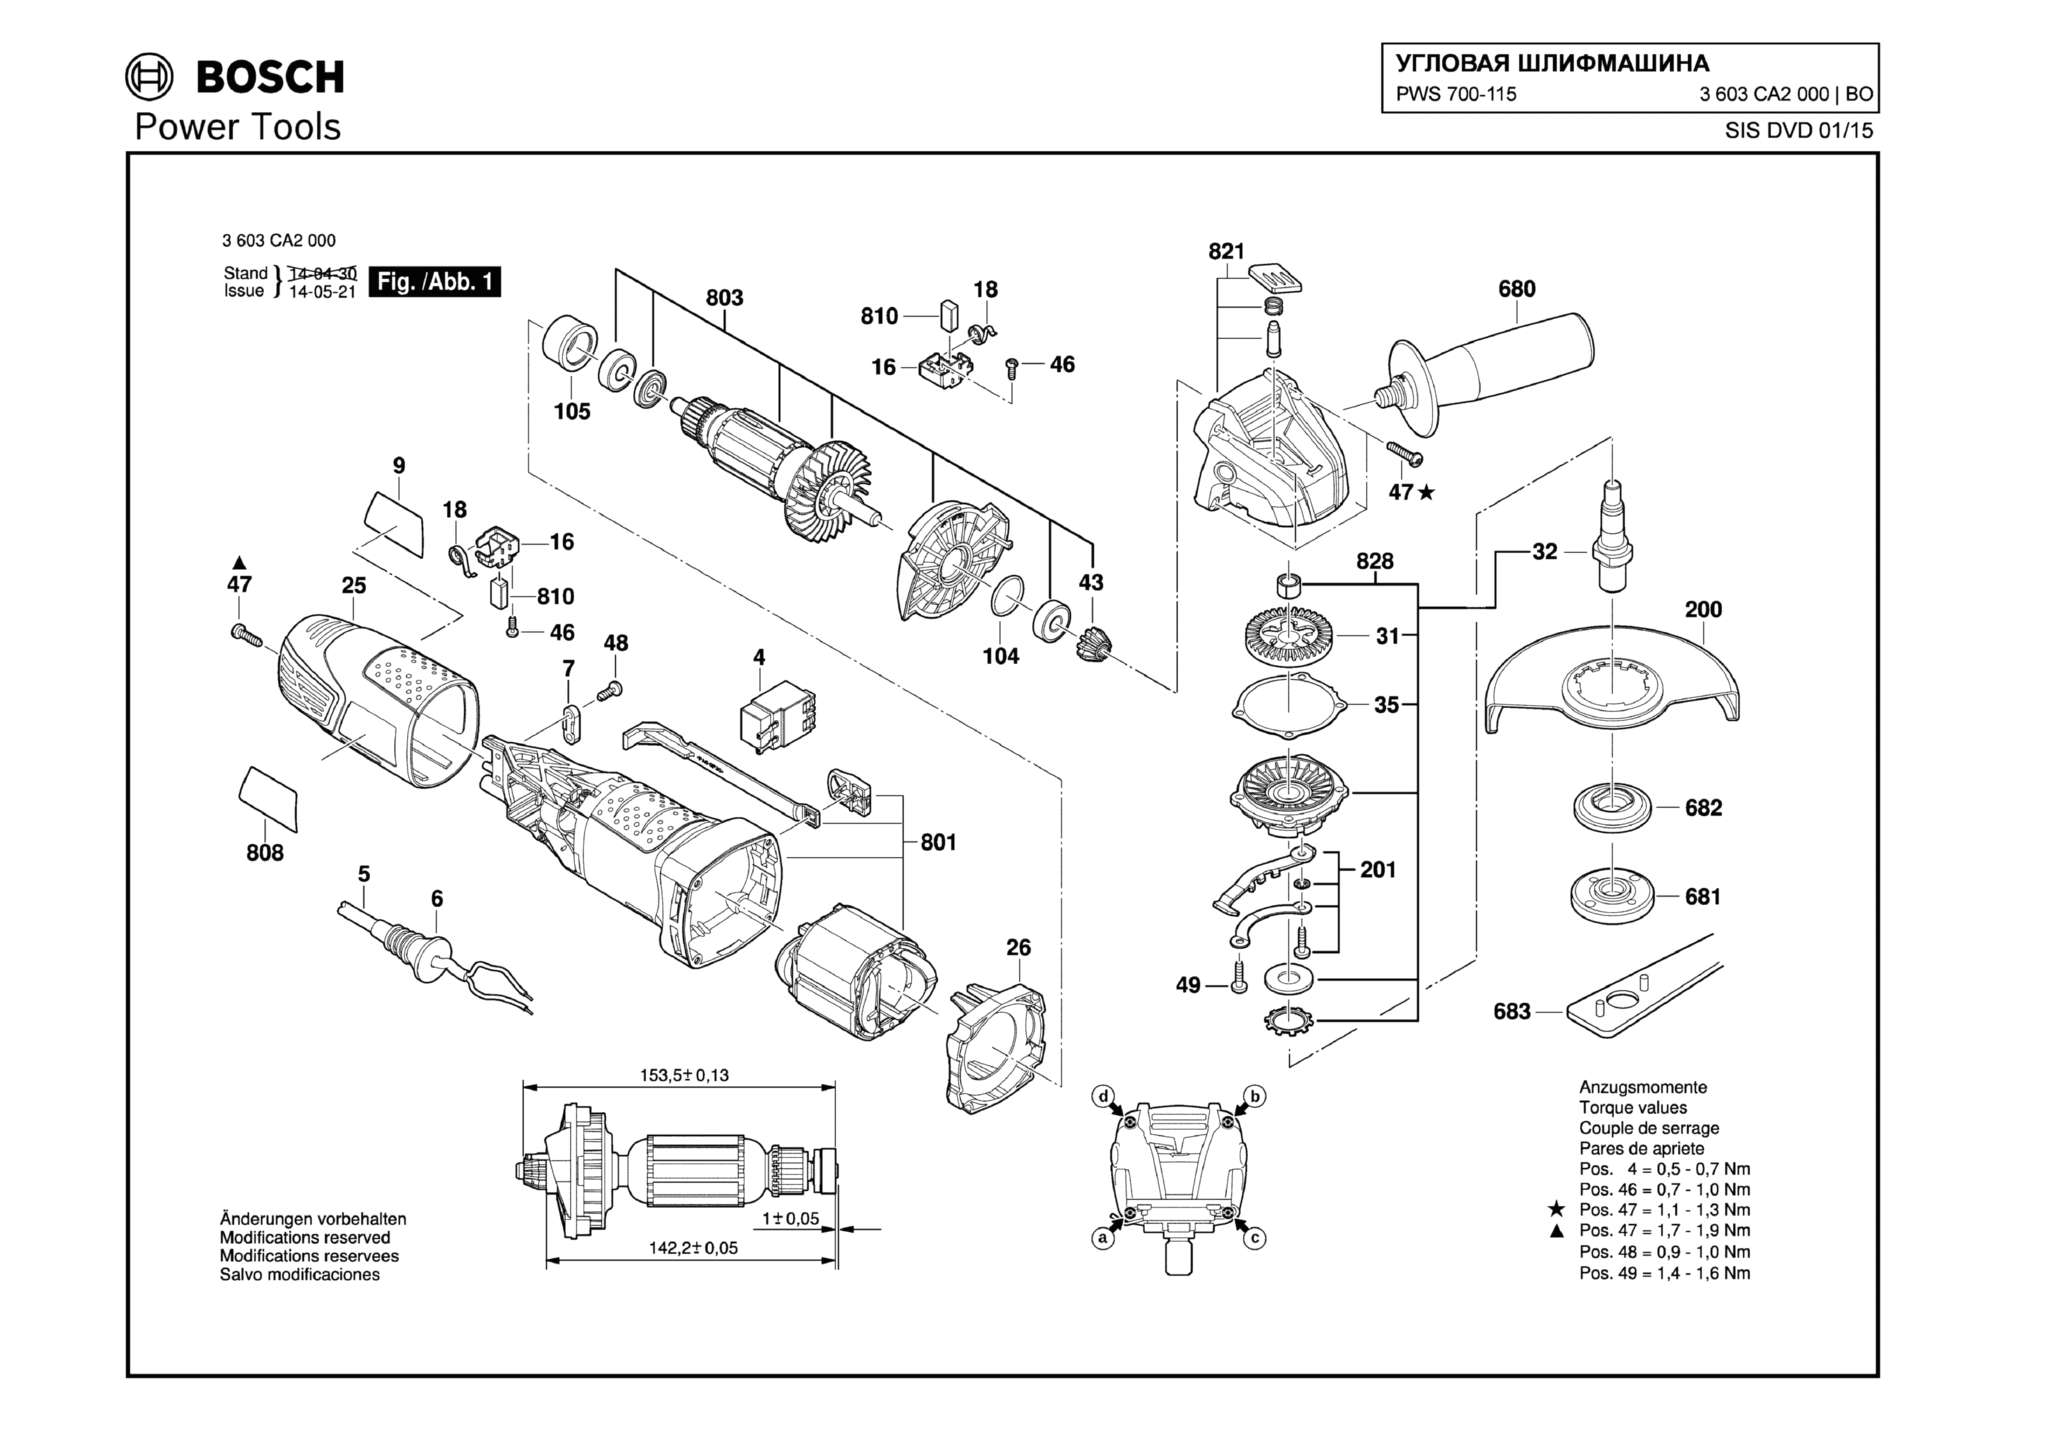 Запчасти, схема и деталировка Bosch PWS 700-115 (ТИП 3603CA2000)